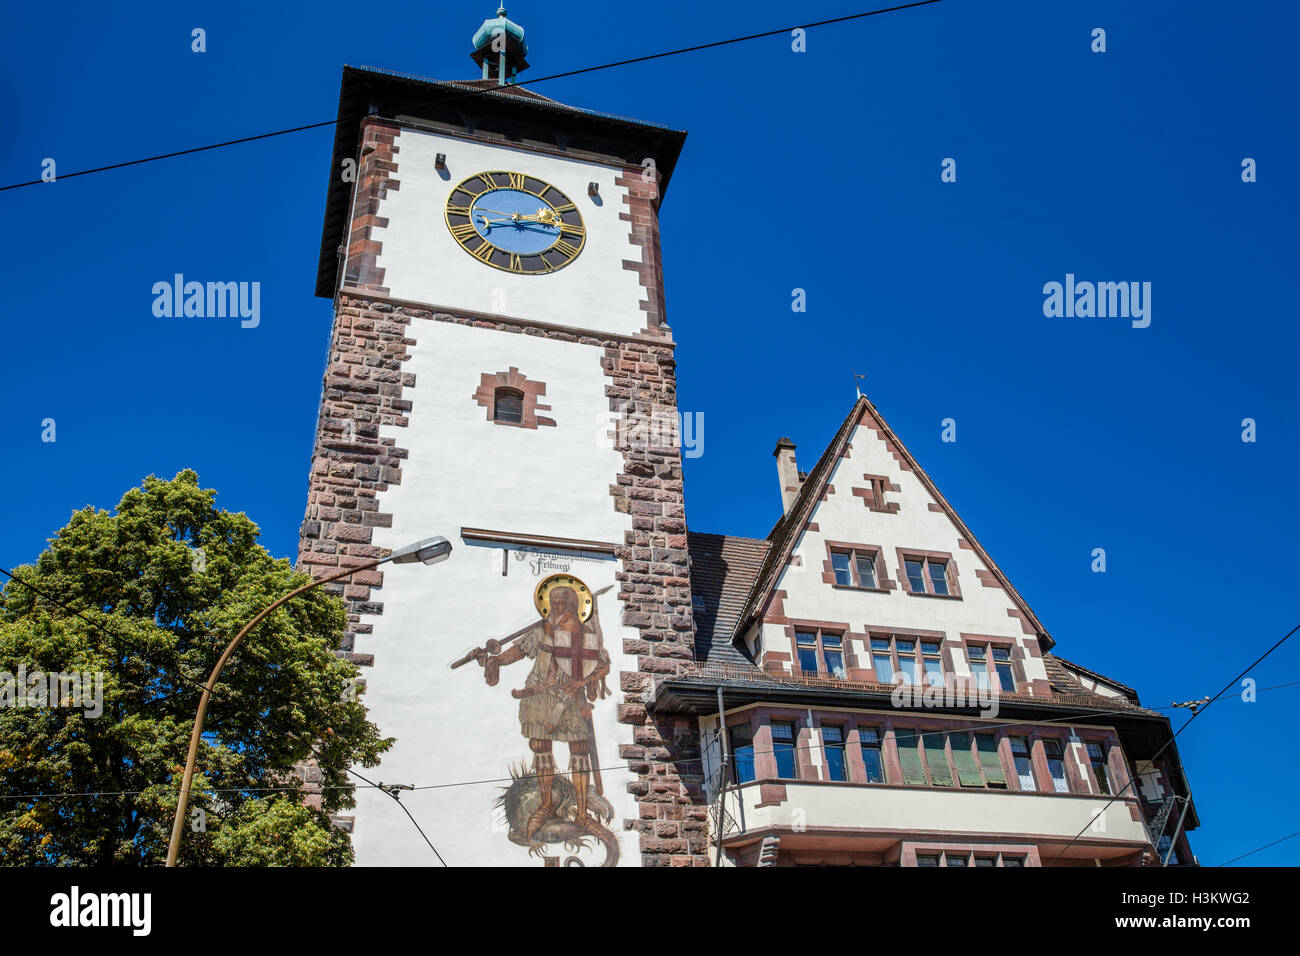 Schwabentor historic city gate of Freiburg im Breisgau, Germany Stock Photo